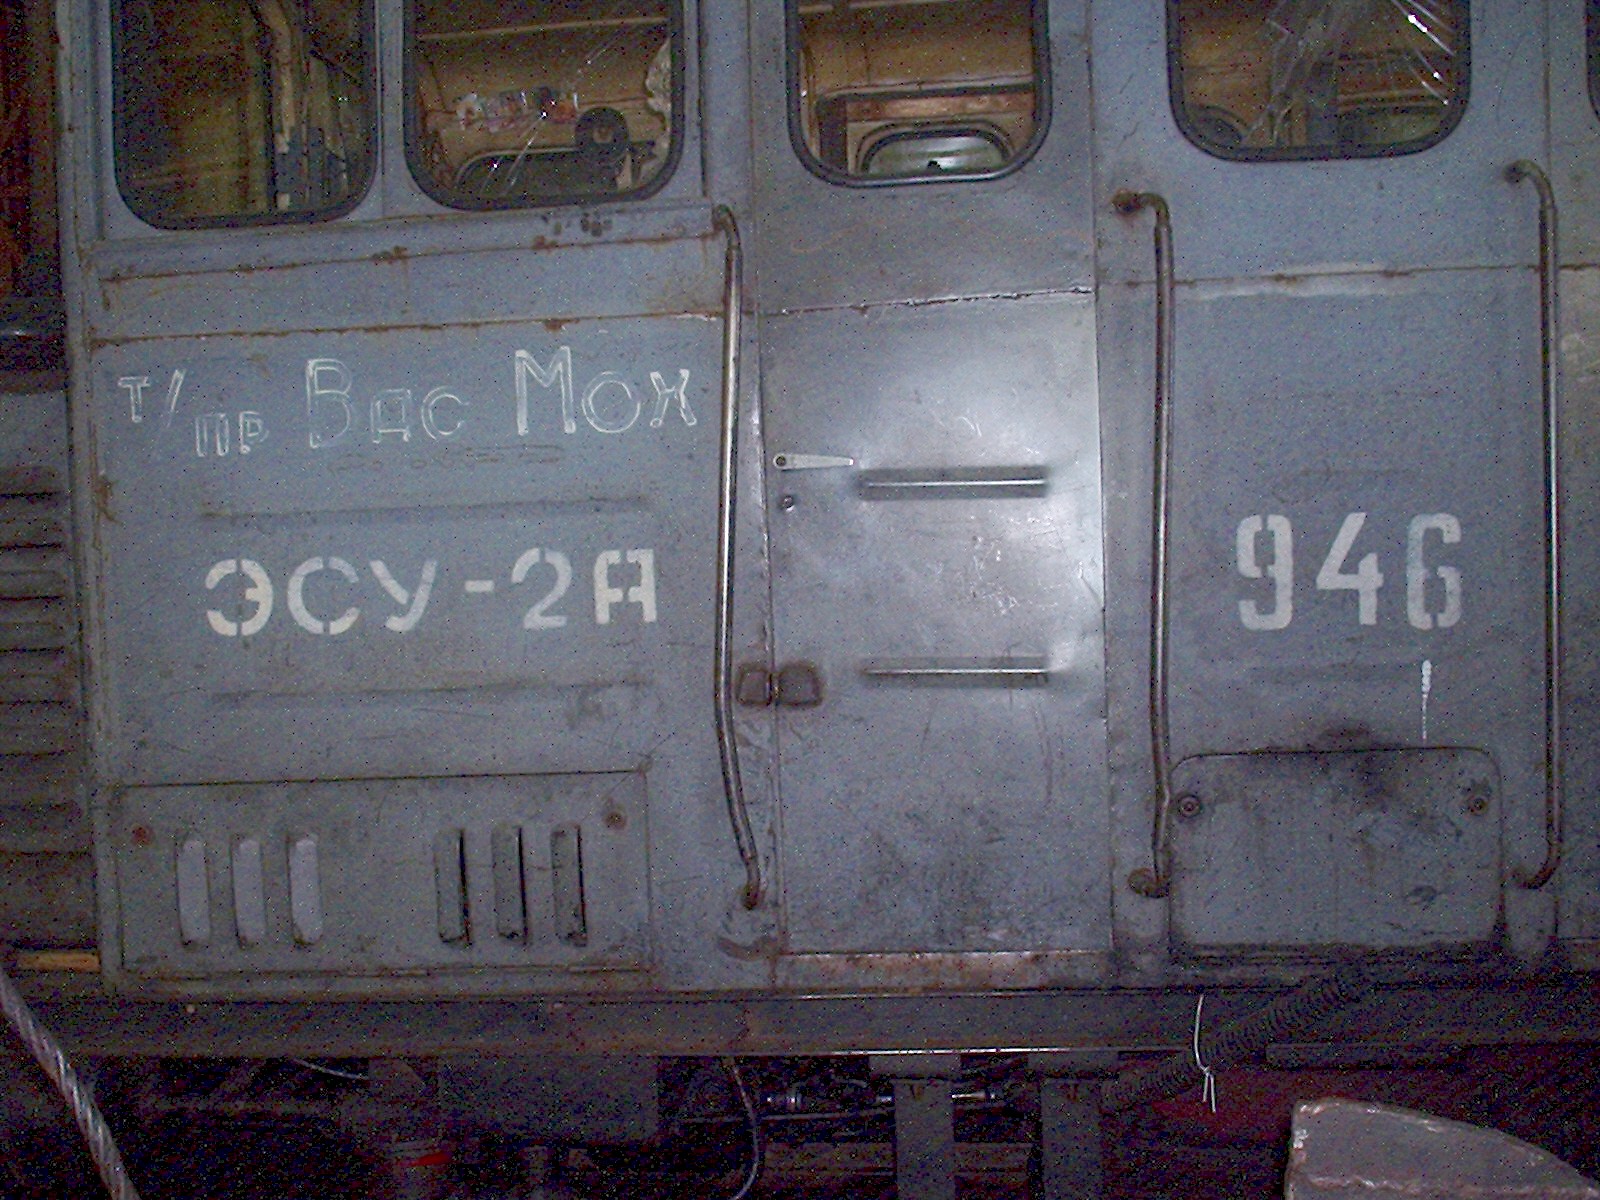 Узкоколейная железная дорога Васильевского предприятия промышленного железнодорожного транспорта  — фотографии, сделанные в 2005 году (часть 7)